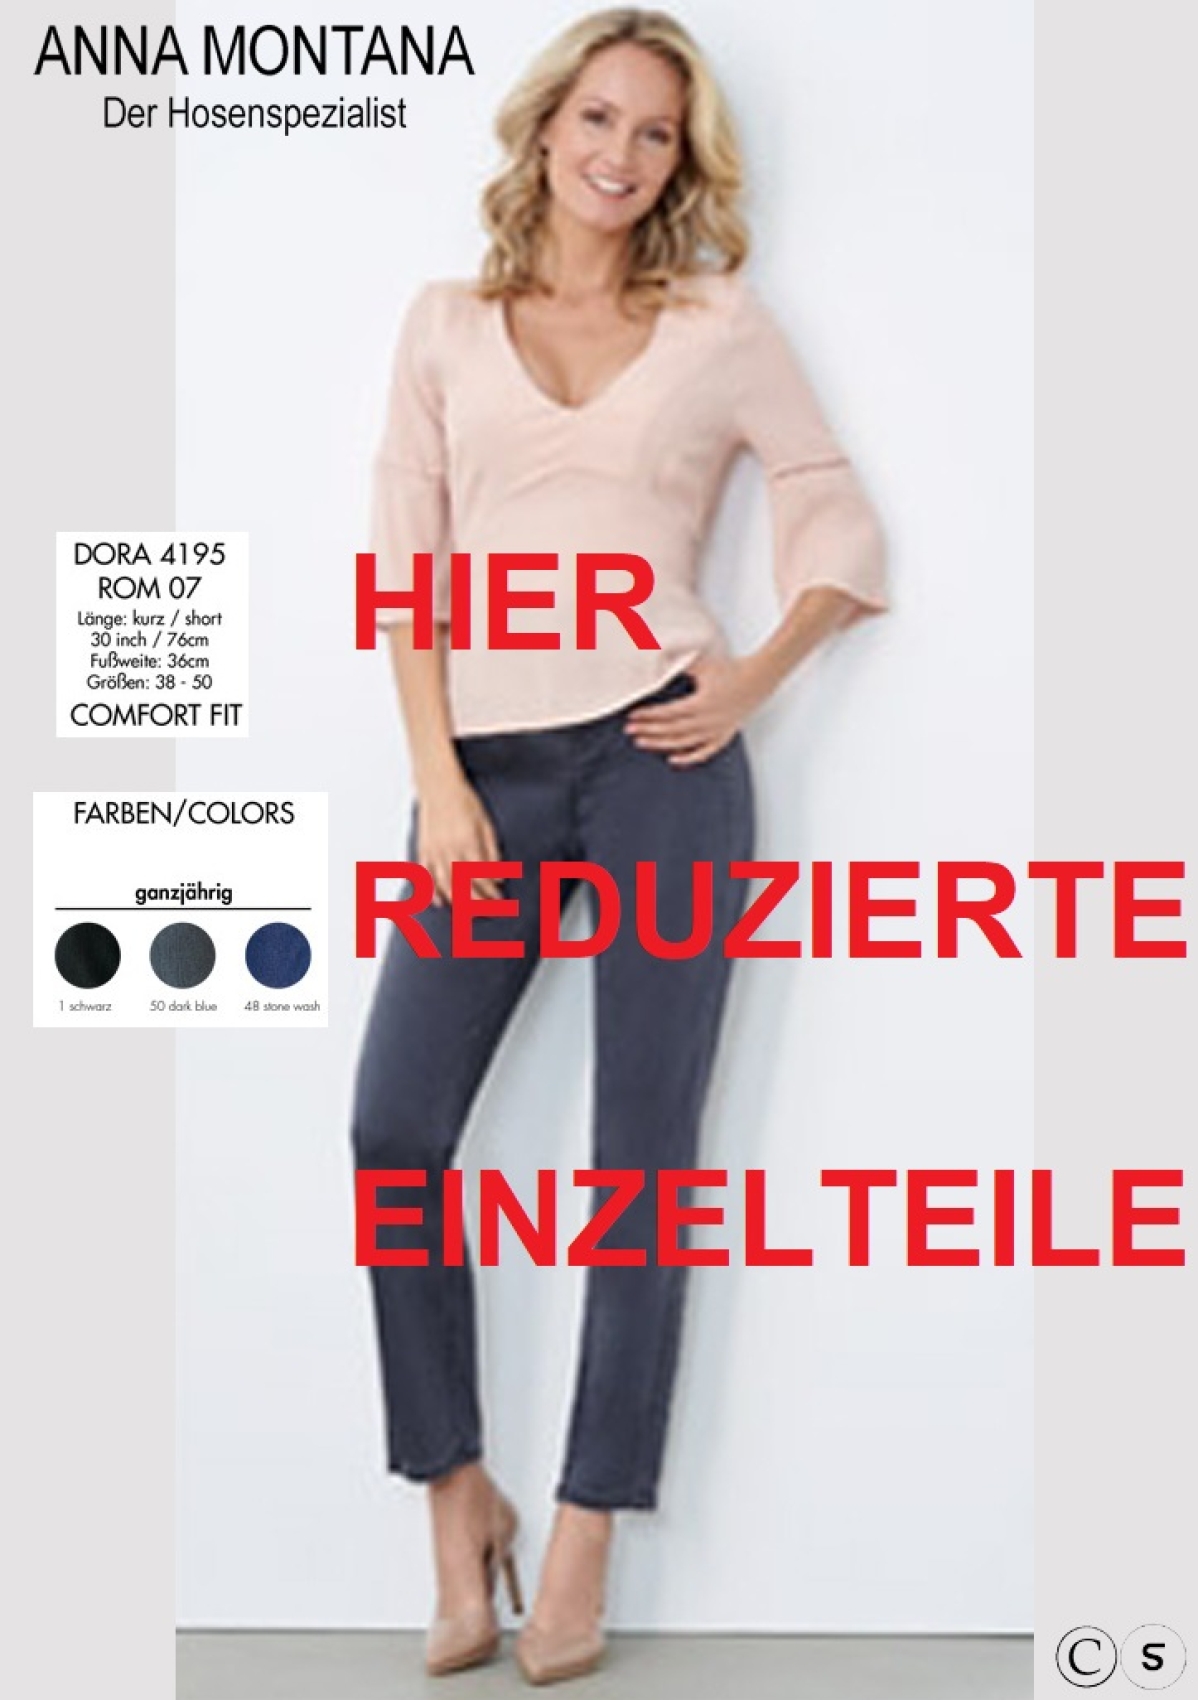 Dora 4195, reduzierte Einzelteile / ER / Standardlängen Hosen /Jeans ANNA MONTANA